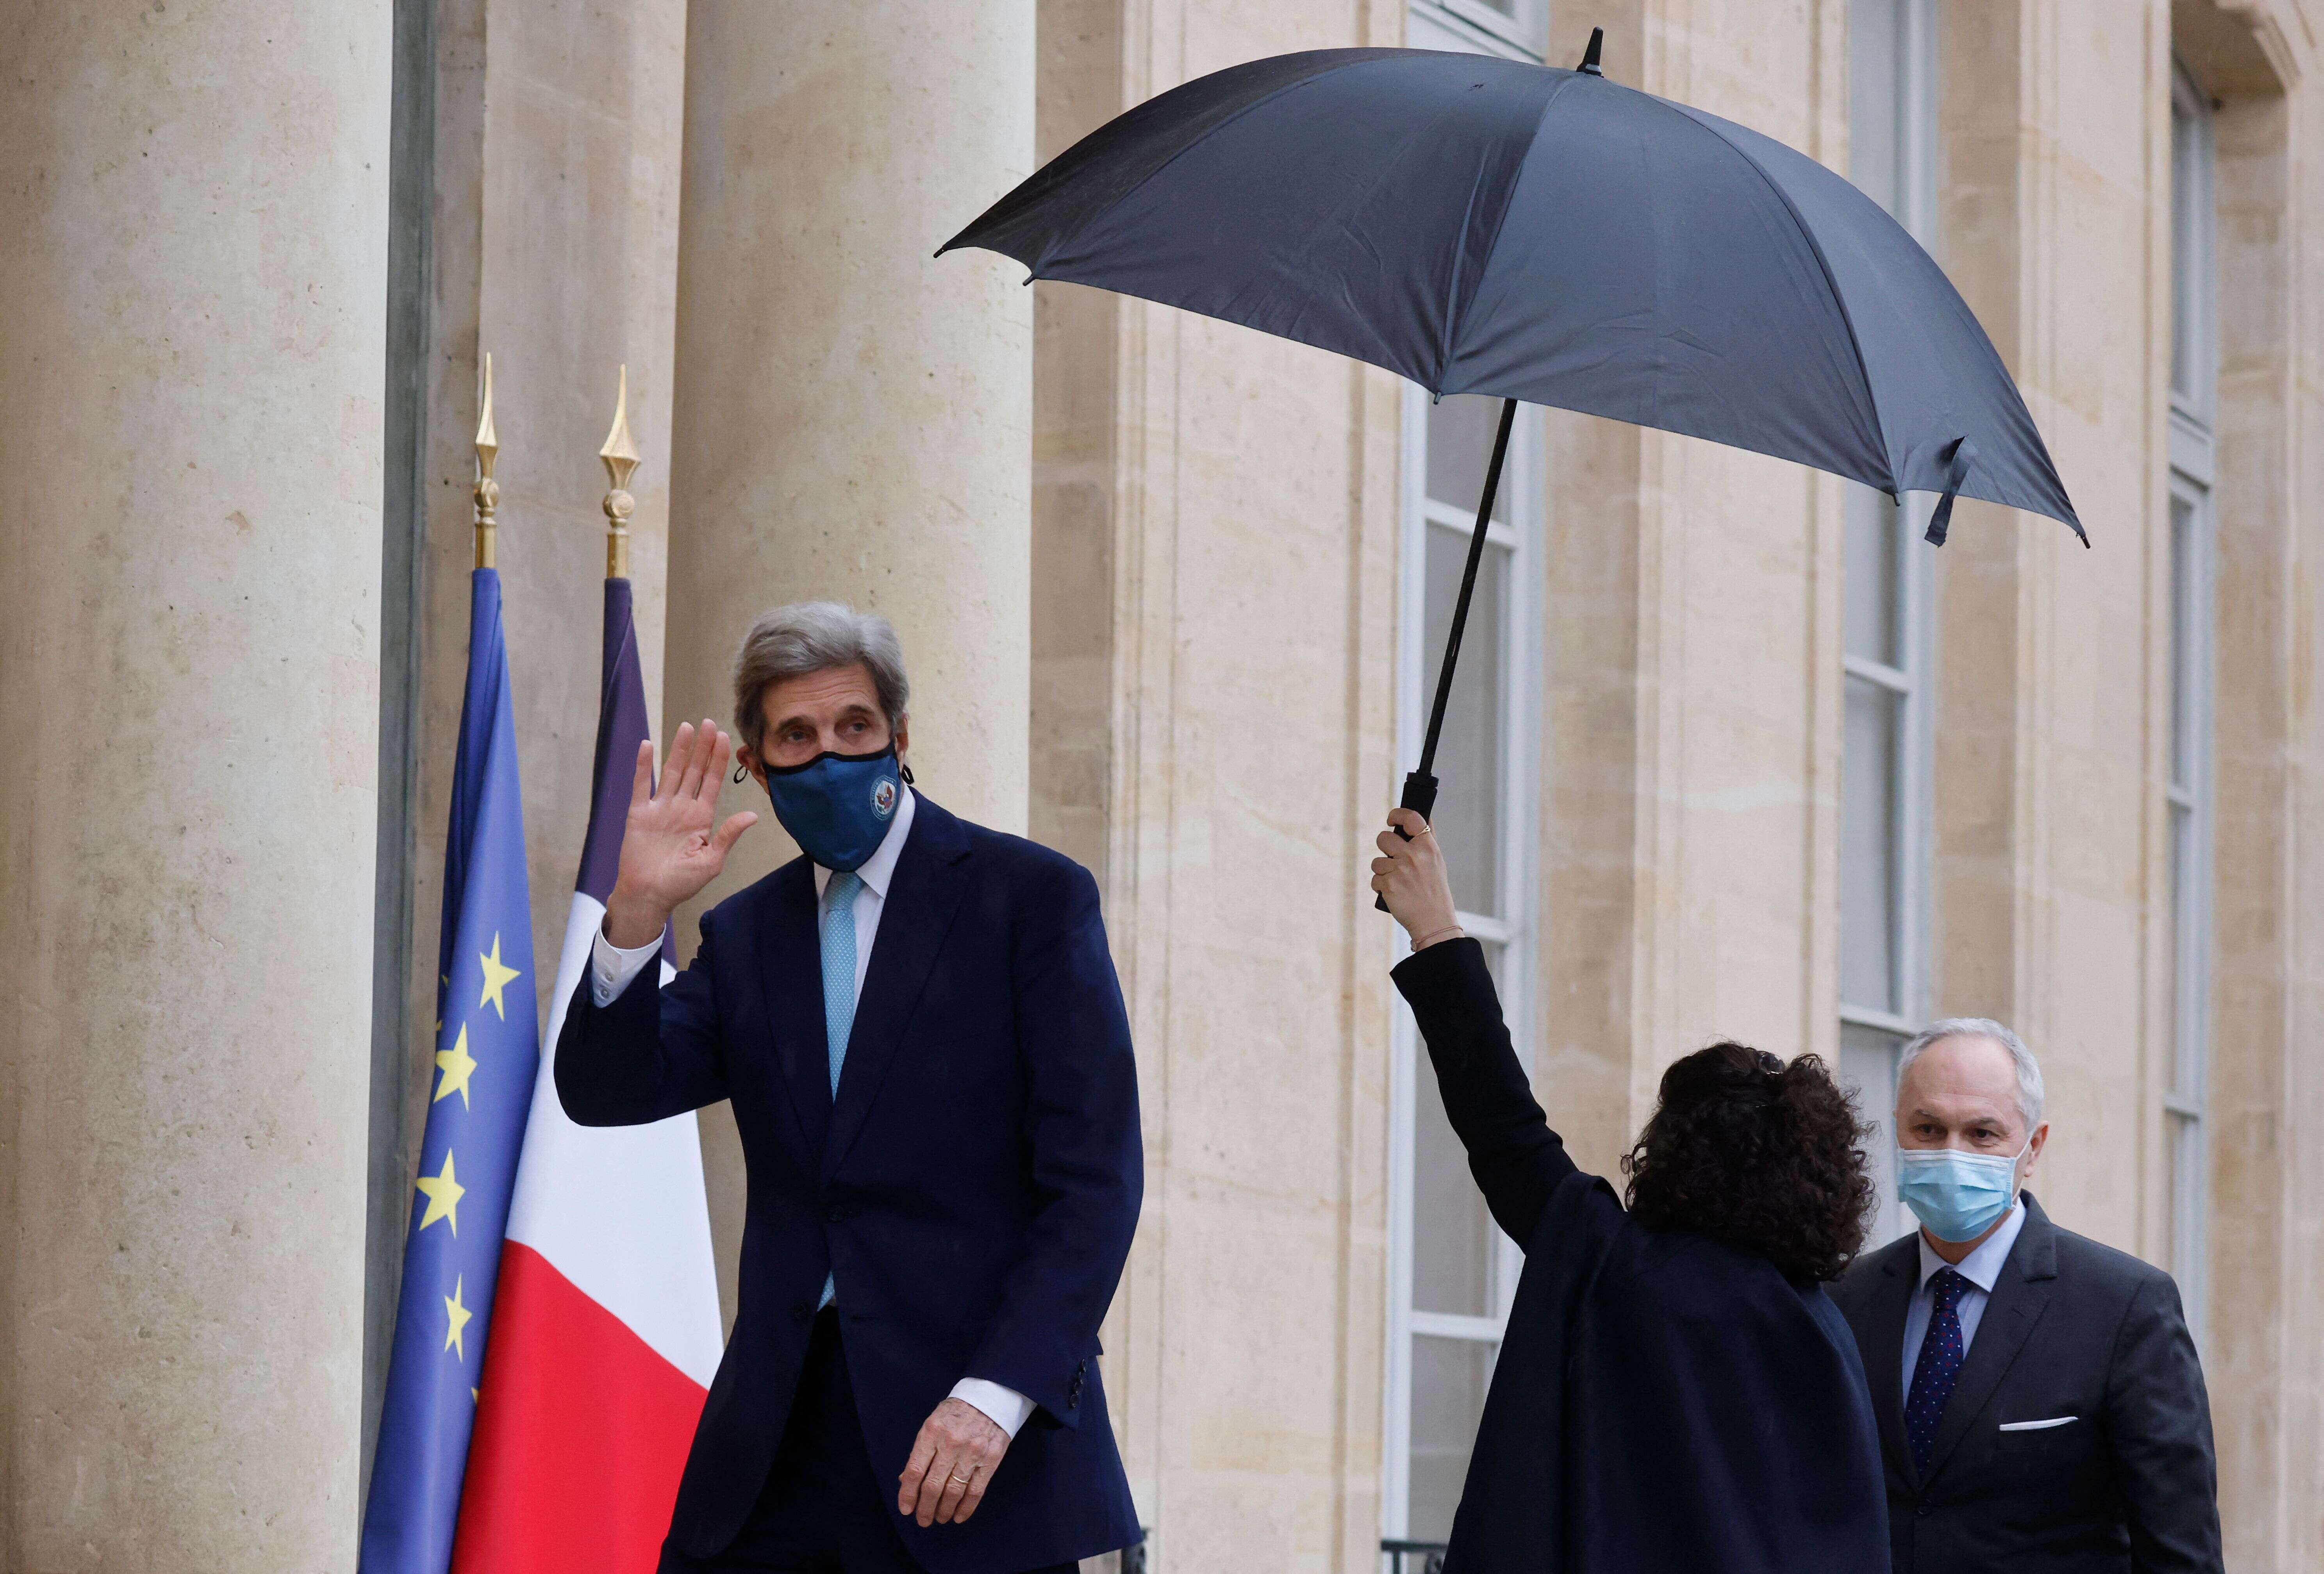 Kerry à son arrivée à l'Elysée pour rencontrer Macron